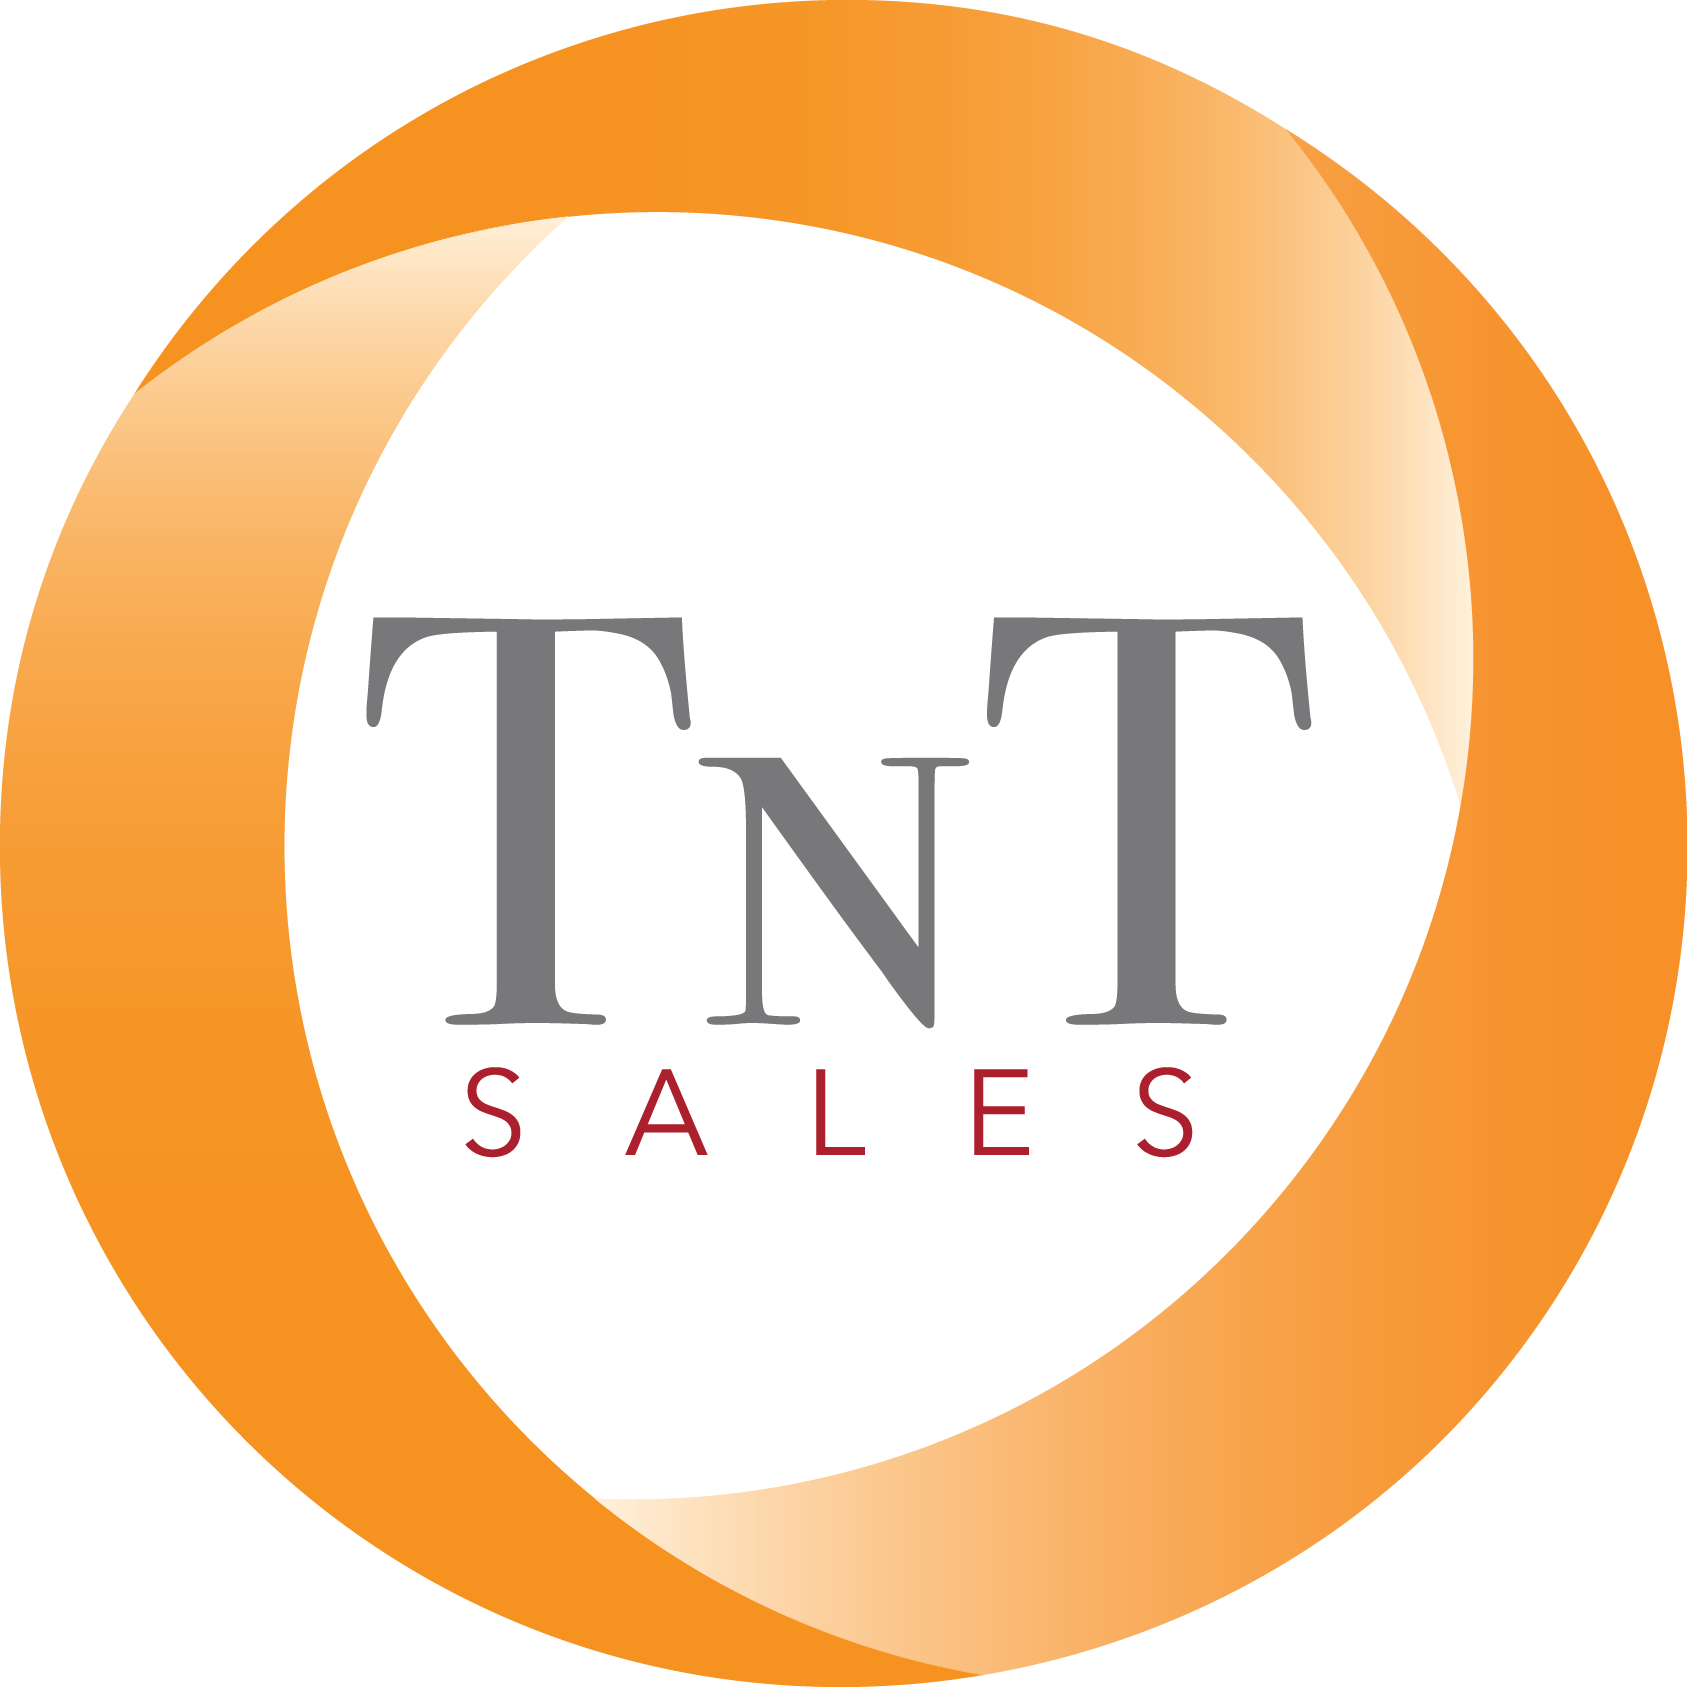 TnT Sales